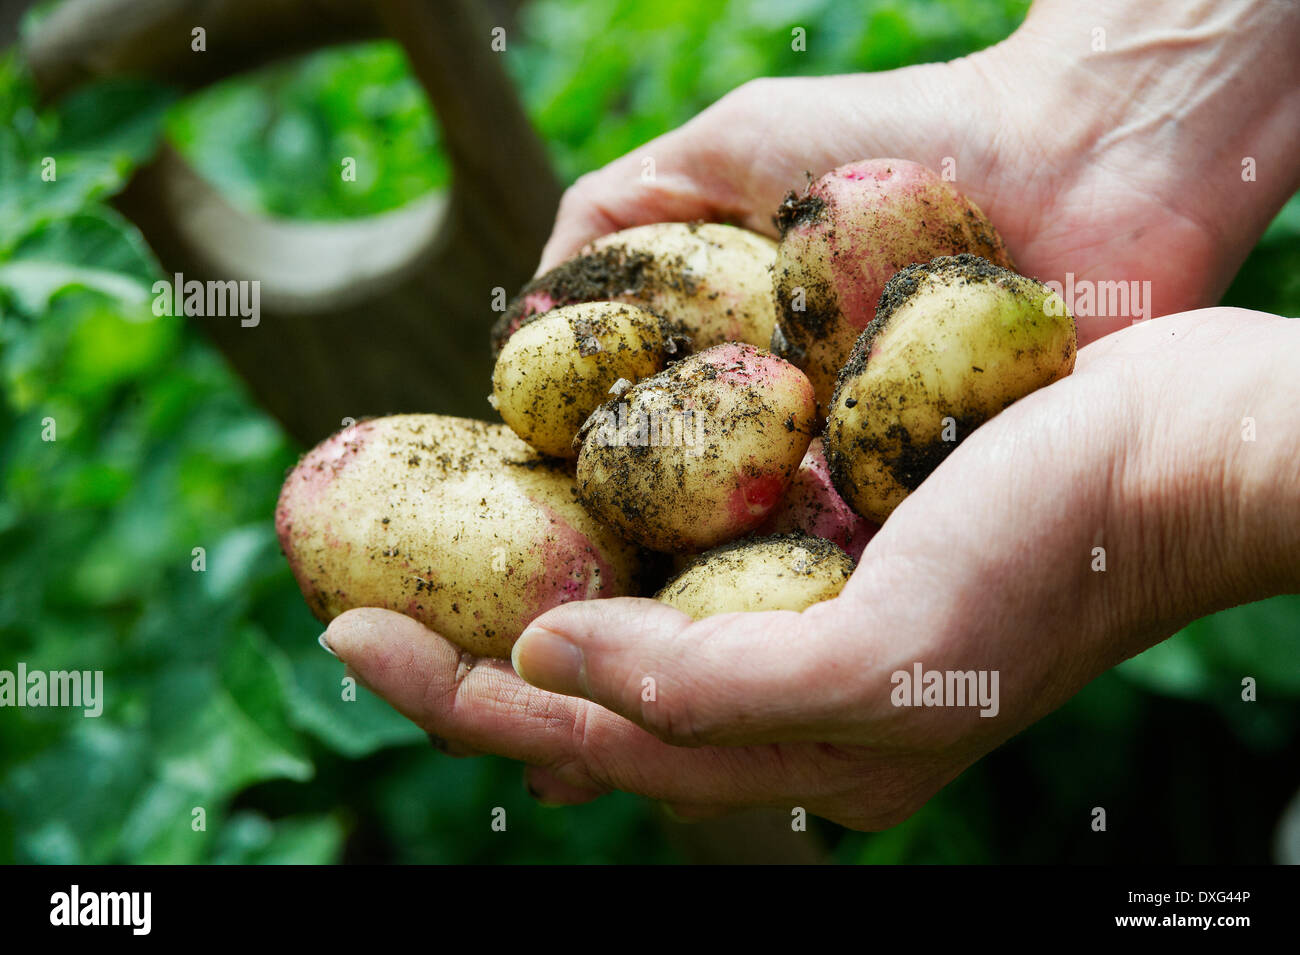 Homme creuser vers le haut des pommes de terre dans le jardin de légumes Banque D'Images